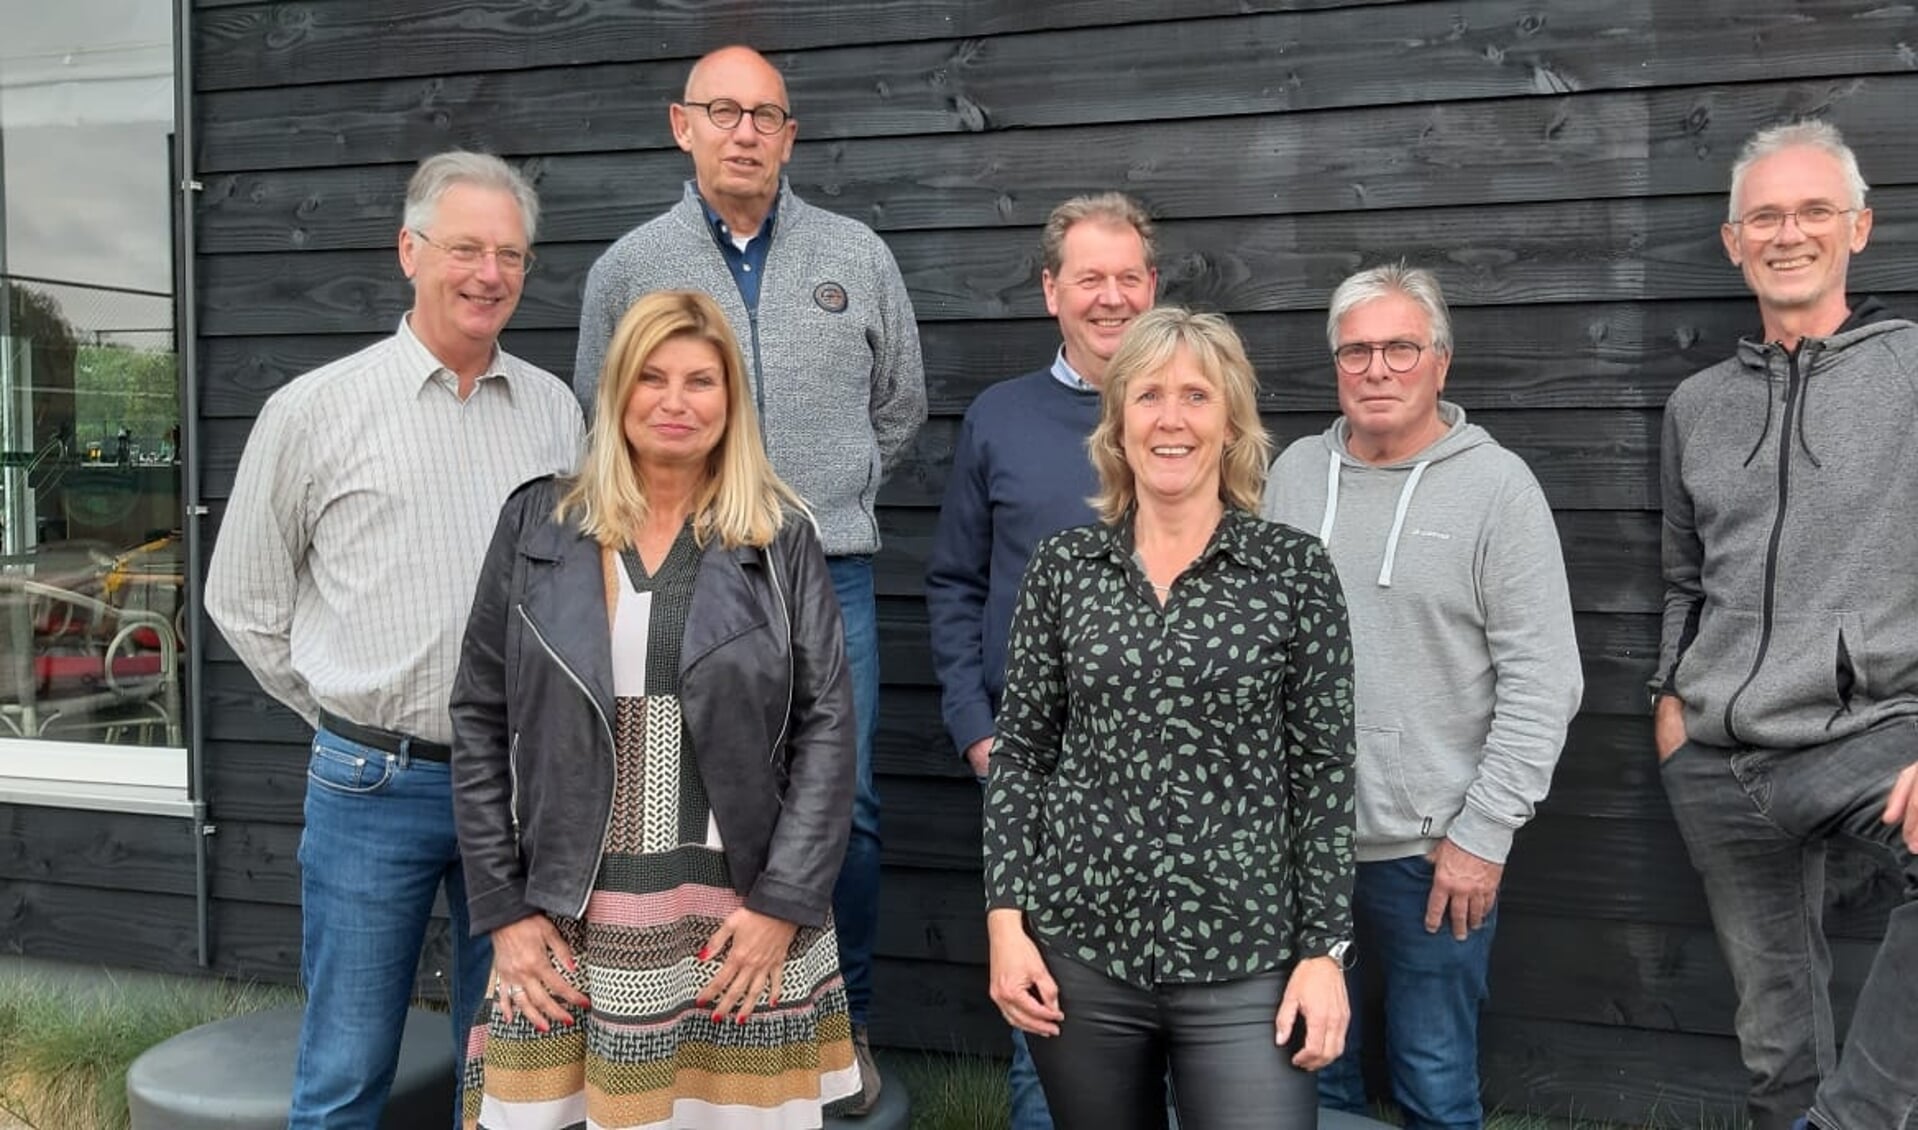 Het nieuwe bestuur inclusief de beheerder van het tennispark, van links naar rechts; Ton van Emmerik, Evelien Loose, Cees Rietmulder, Bas Norel, Jolanda Friedhoff-Kneijber, Henny Rodenburg (beheerder) en Peter Scholtens.